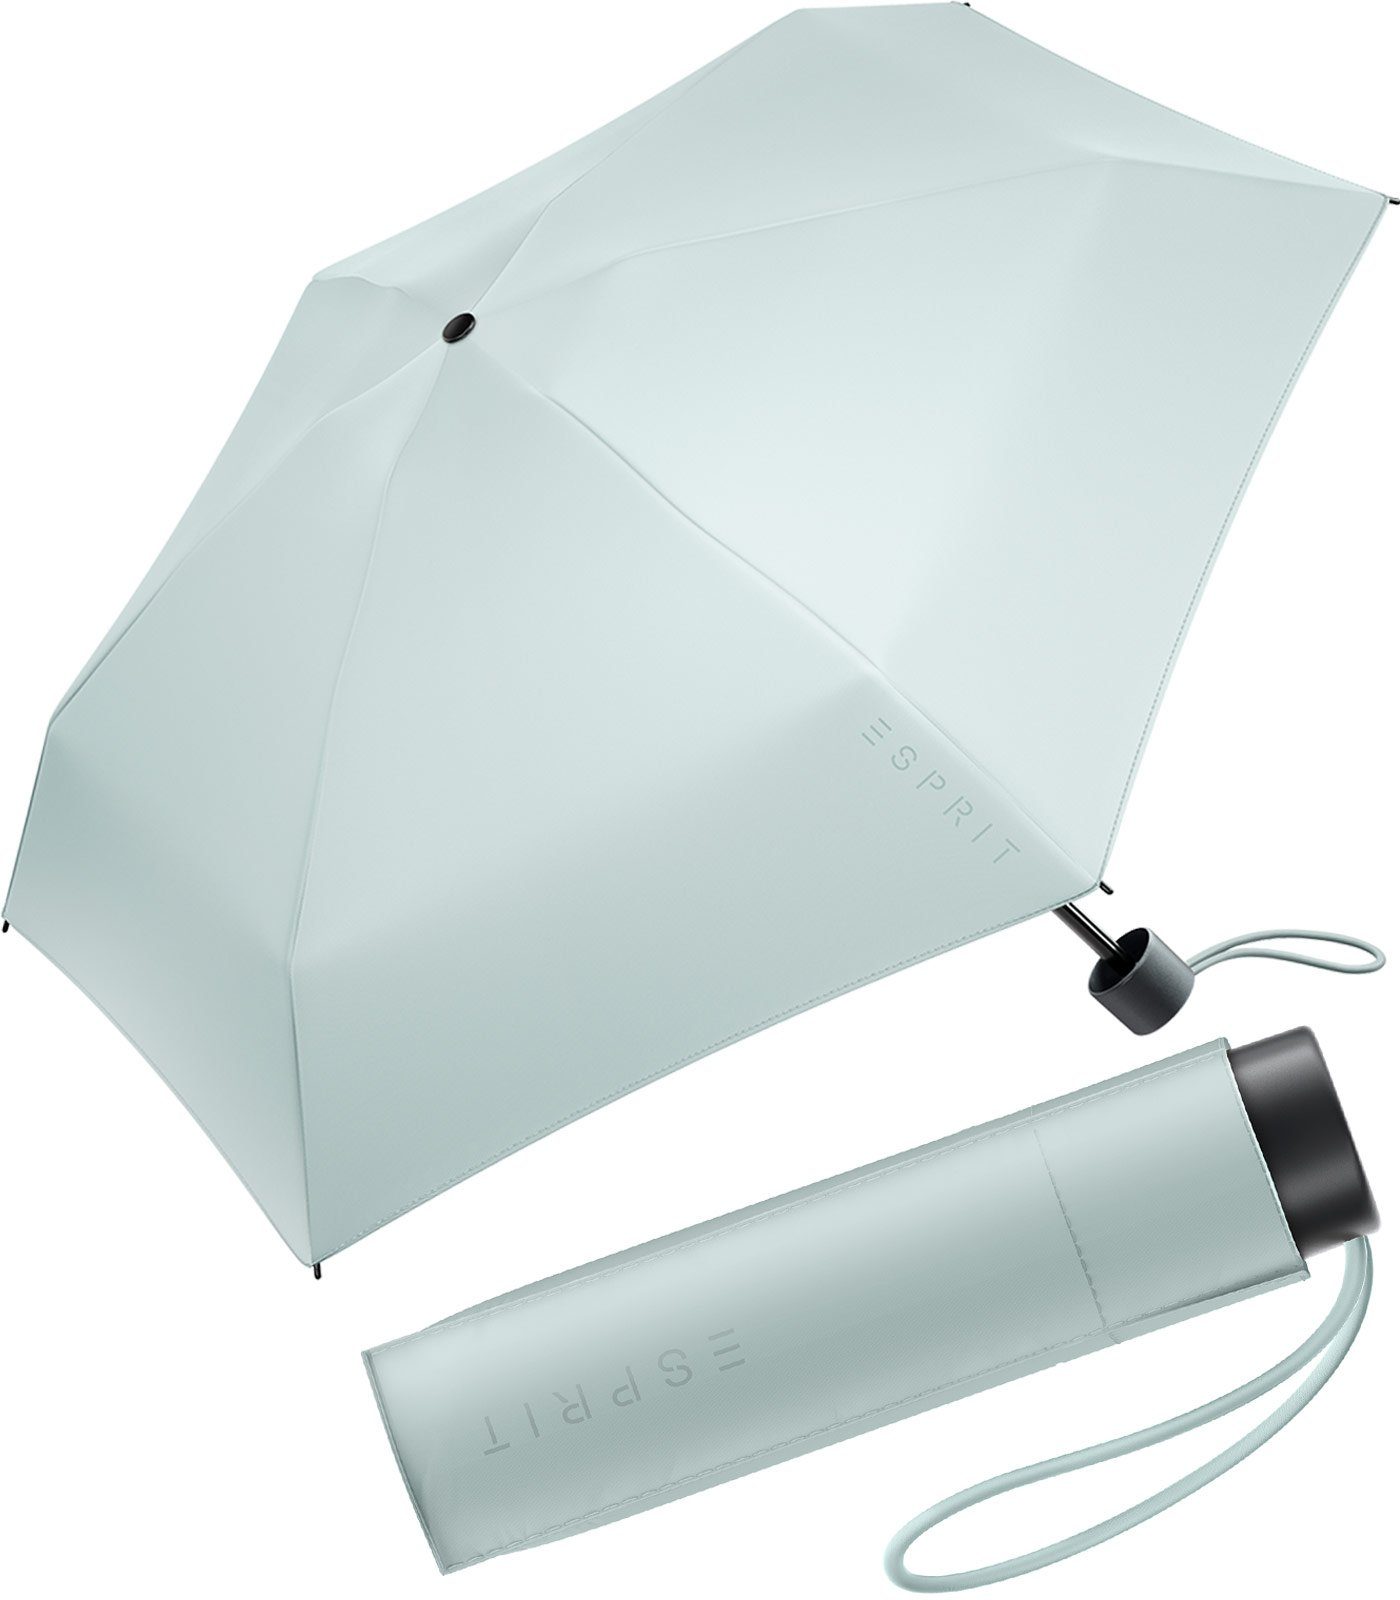 Esprit Taschenregenschirm Damen Super Mini Regenschirm Petito FJ 2022, winzig klein, in den neuen Trendfarben graublau